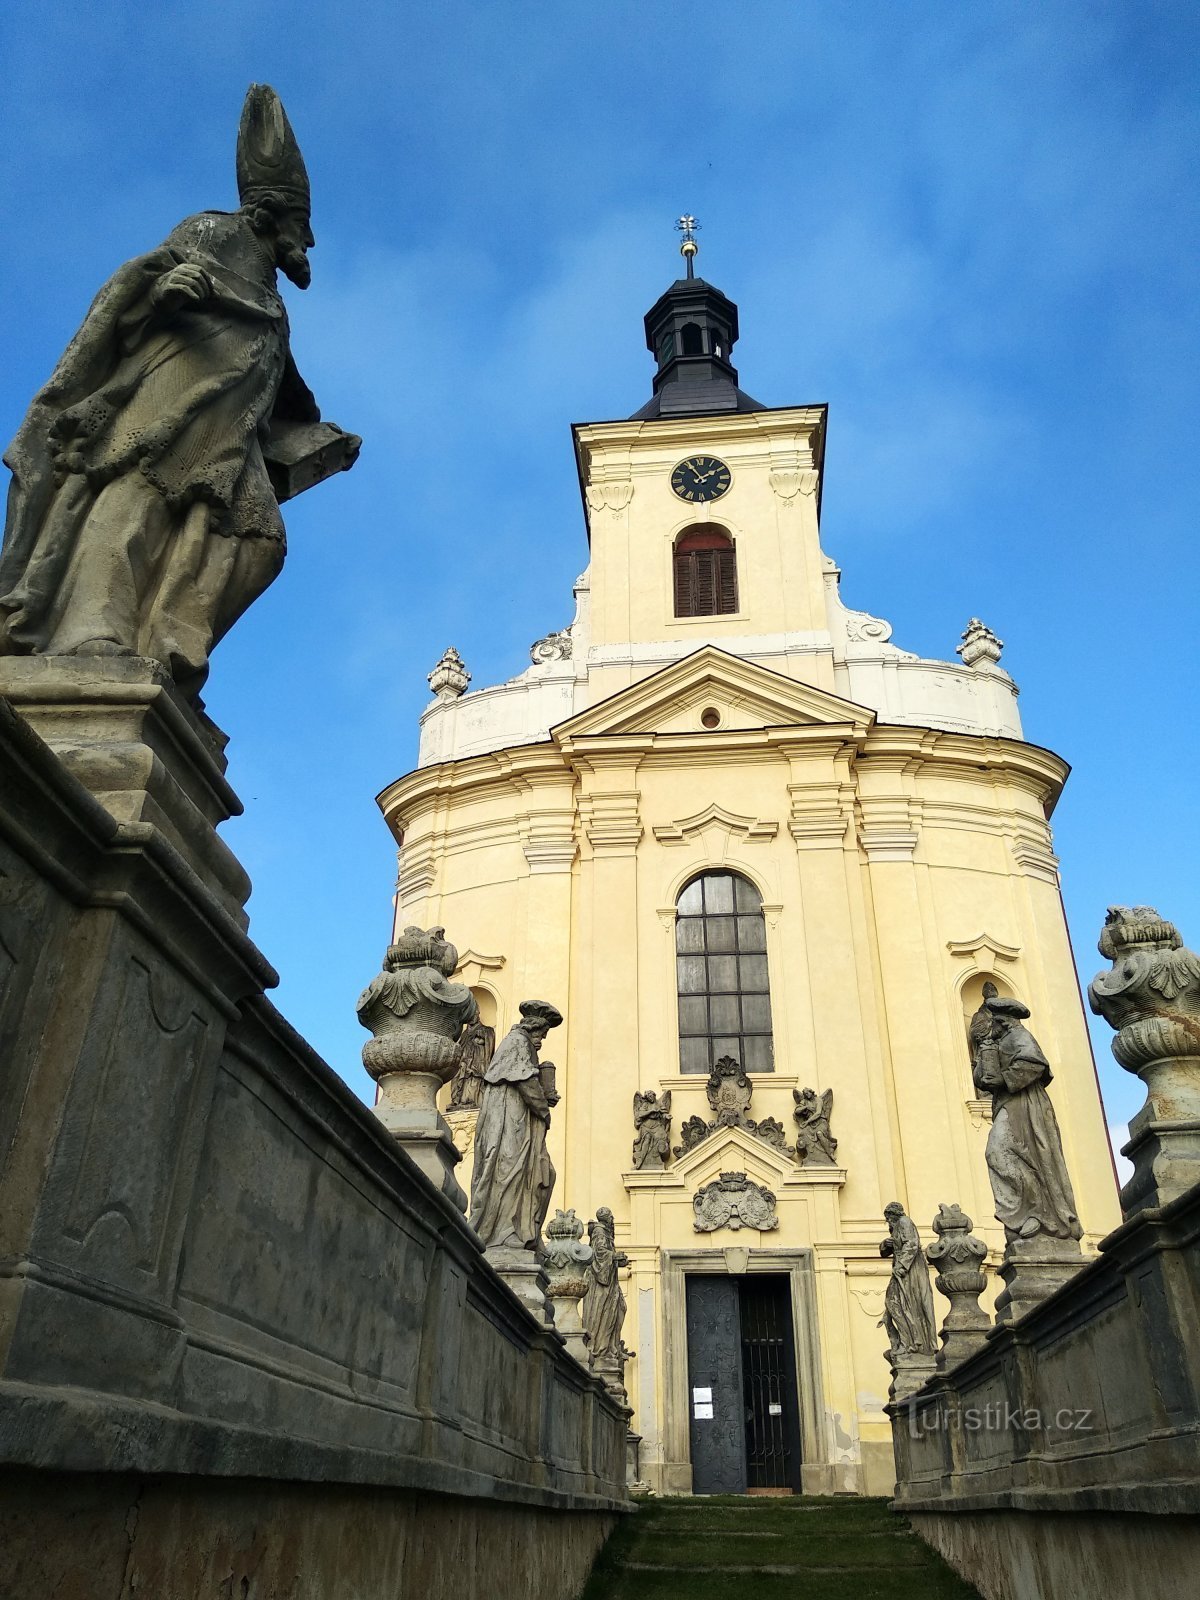 kościół św. Wacław - galeria świętych